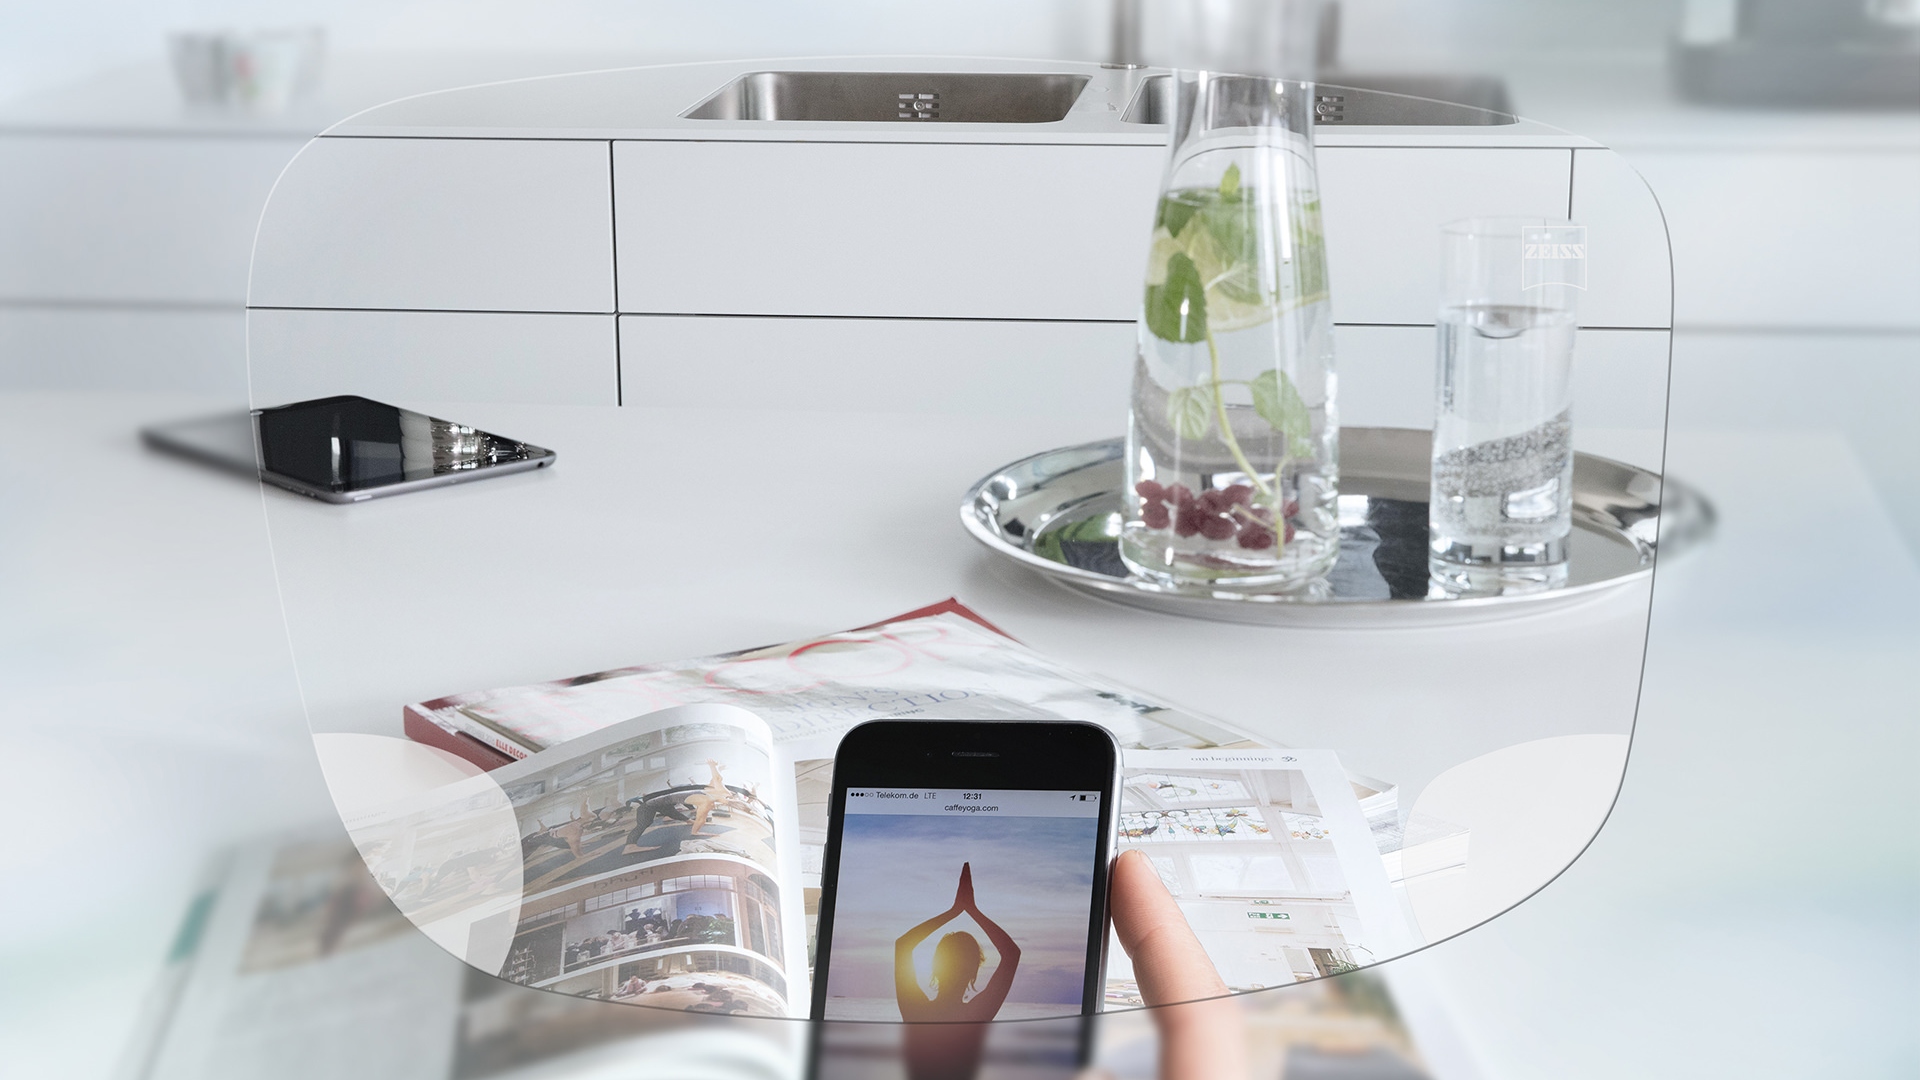 Pohled přes jednoohniskové brýlové čočky ZEISS EnergizeMe na obrazovku chytrého telefonu a uspořádaný kuchyňský stůl.